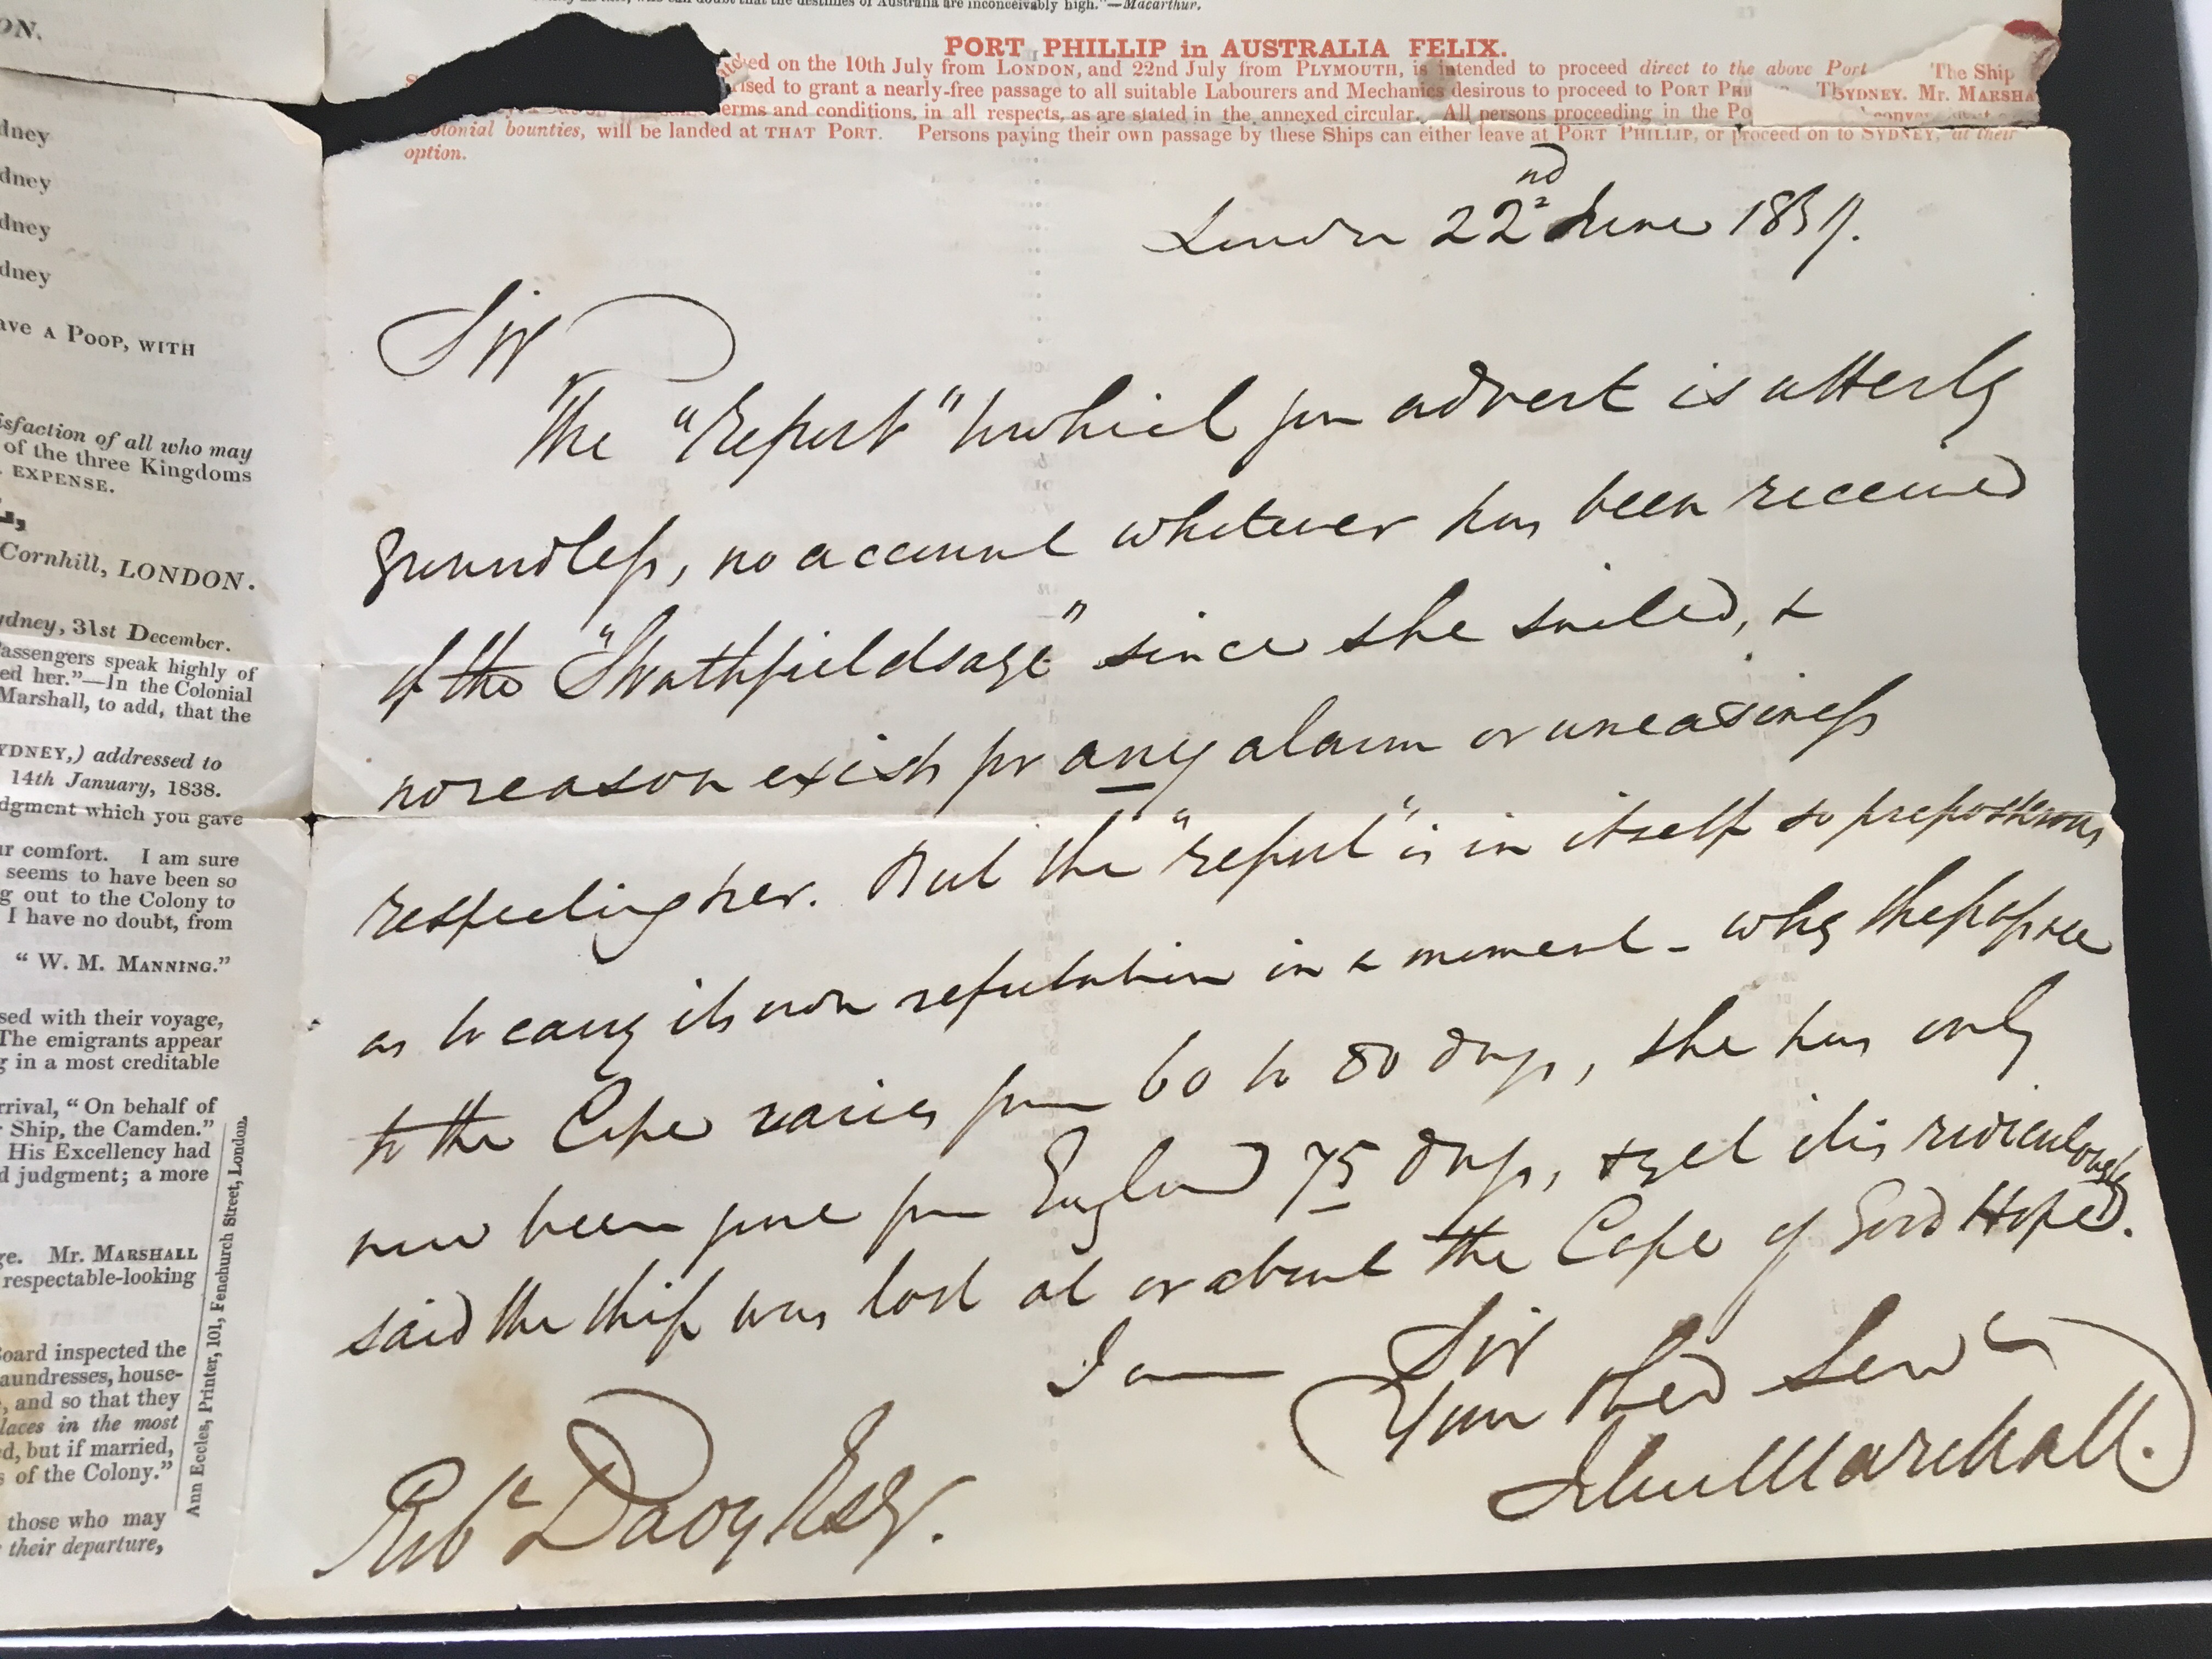 John Marshall handwritten note